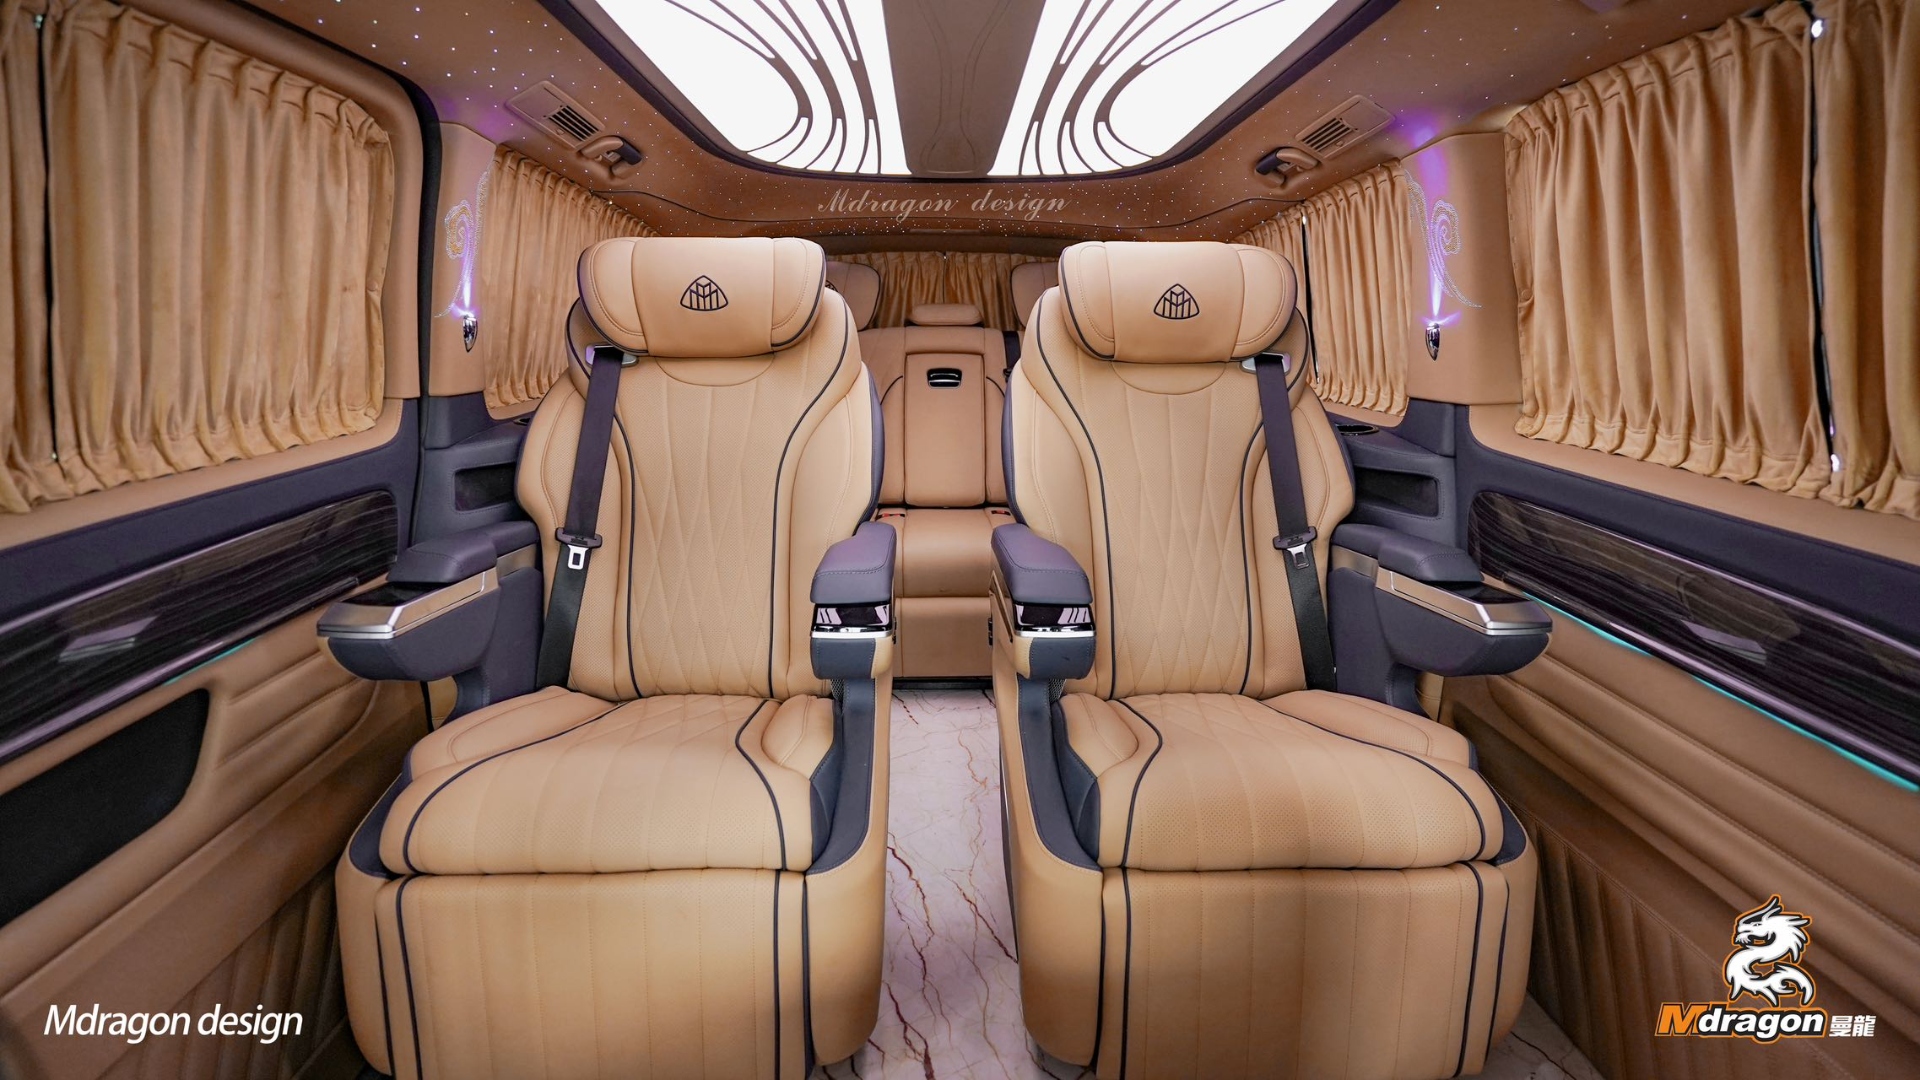 822 2015-2018 Benz Vito interior modification